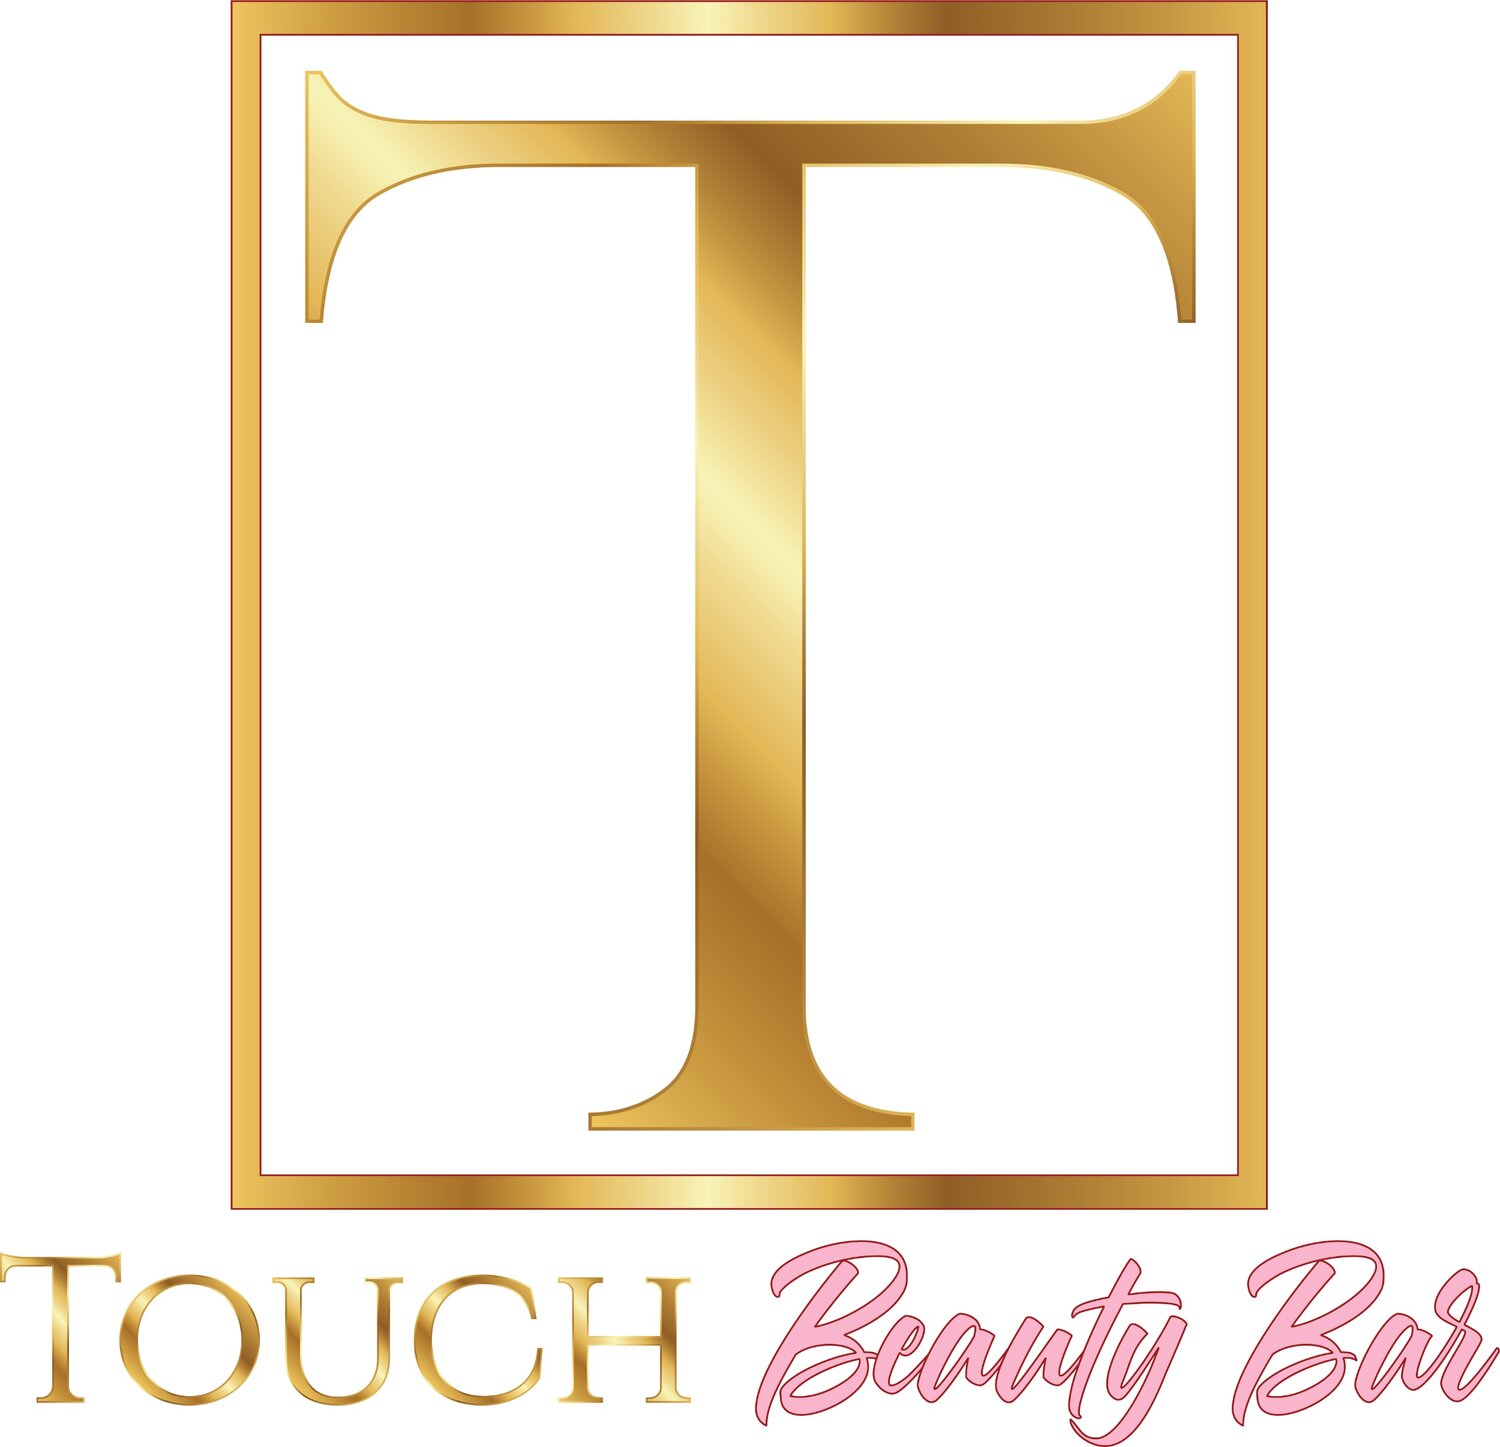 Touch Beauty Bar